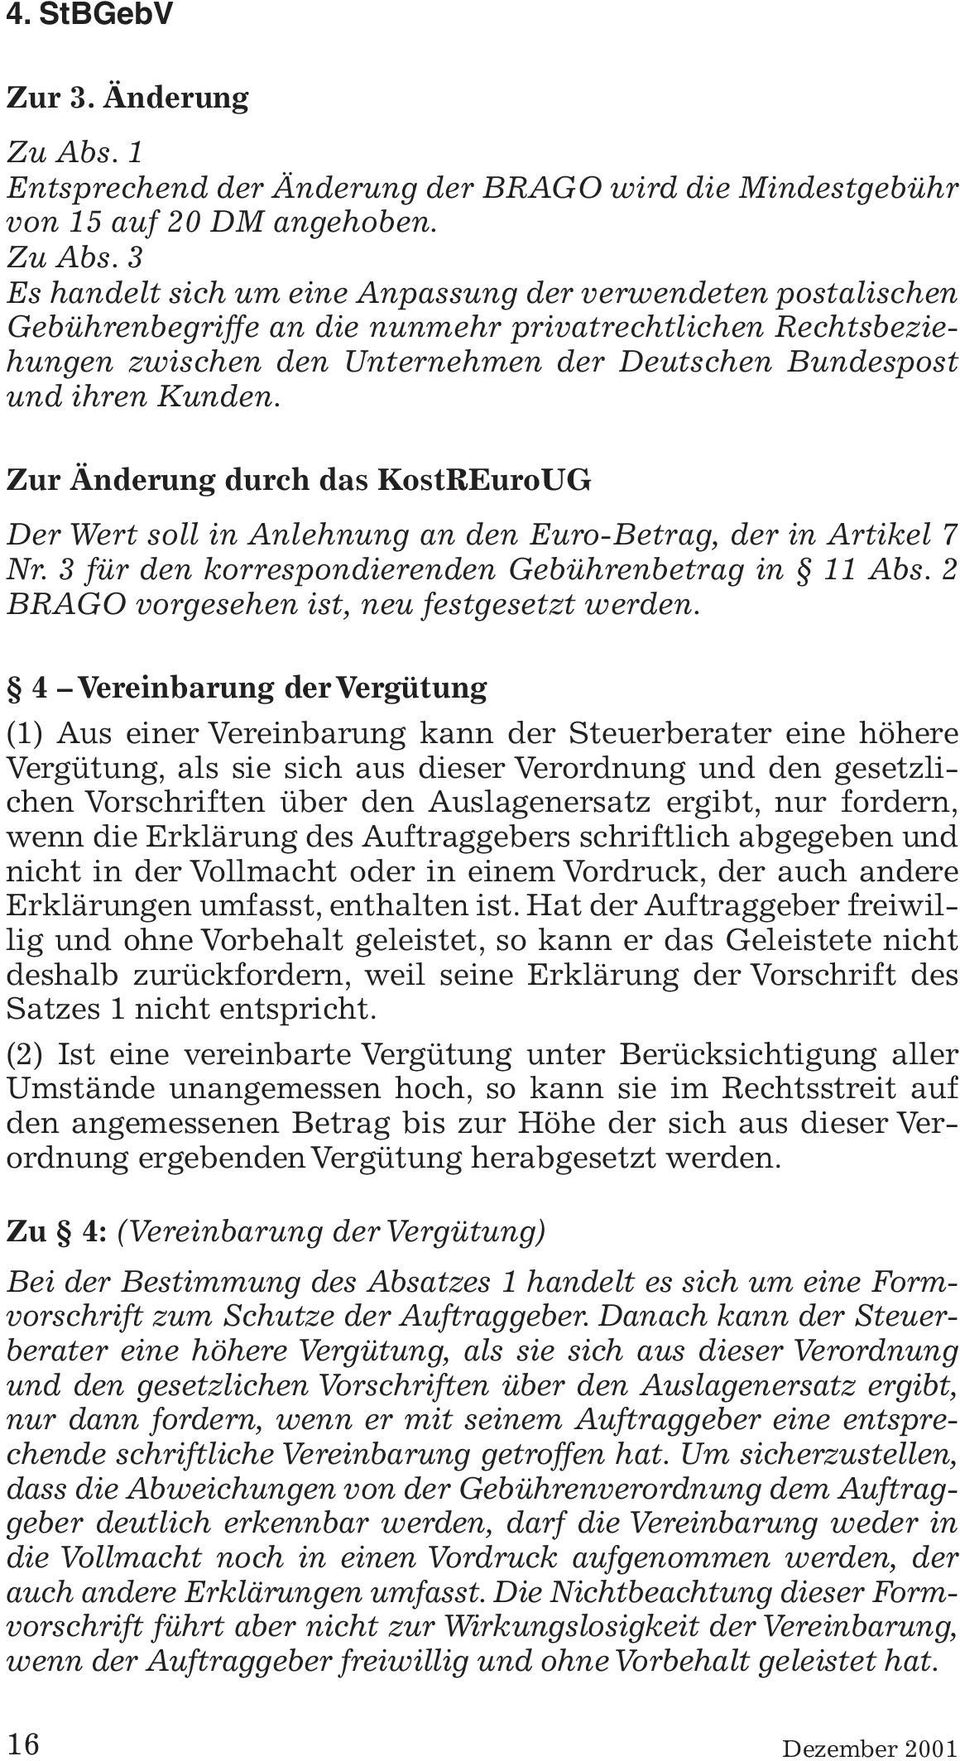 3 Es handelt sich um eine Anpassung der verwendeten postalischen Gebührenbegriffe an die nunmehr privatrechtlichen Rechtsbeziehungen zwischen den Unternehmen der Deutschen Bundespost und ihren Kunden.